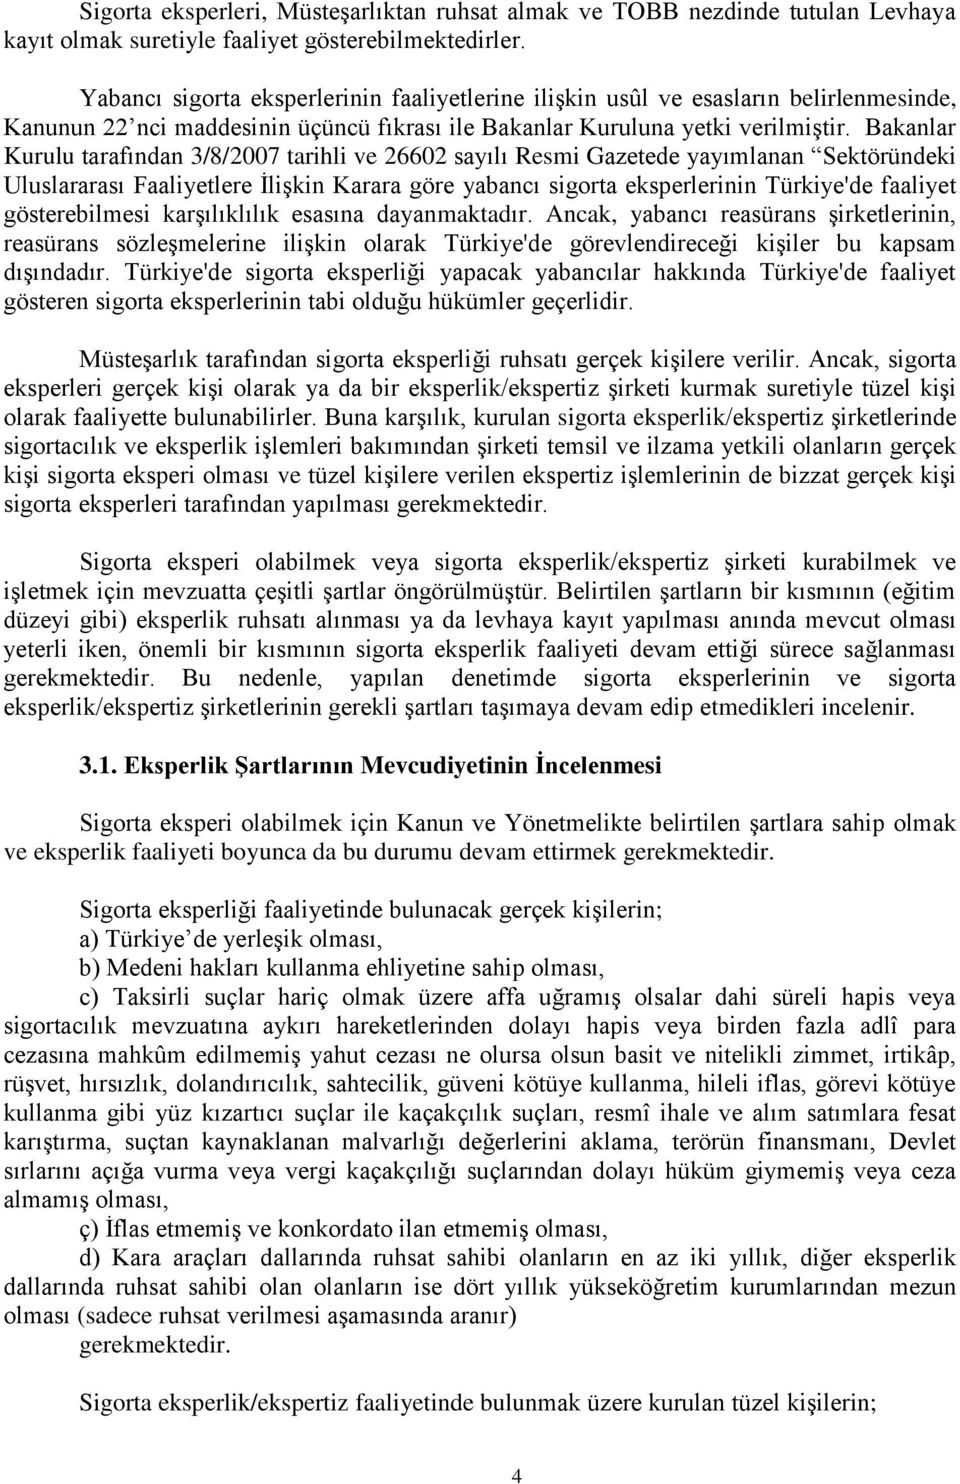 Bakanlar Kurulu tarafından 3/8/2007 tarihli ve 26602 sayılı Resmi Gazetede yayımlanan Sektöründeki Uluslararası Faaliyetlere İlişkin Karara göre yabancı sigorta eksperlerinin Türkiye'de faaliyet